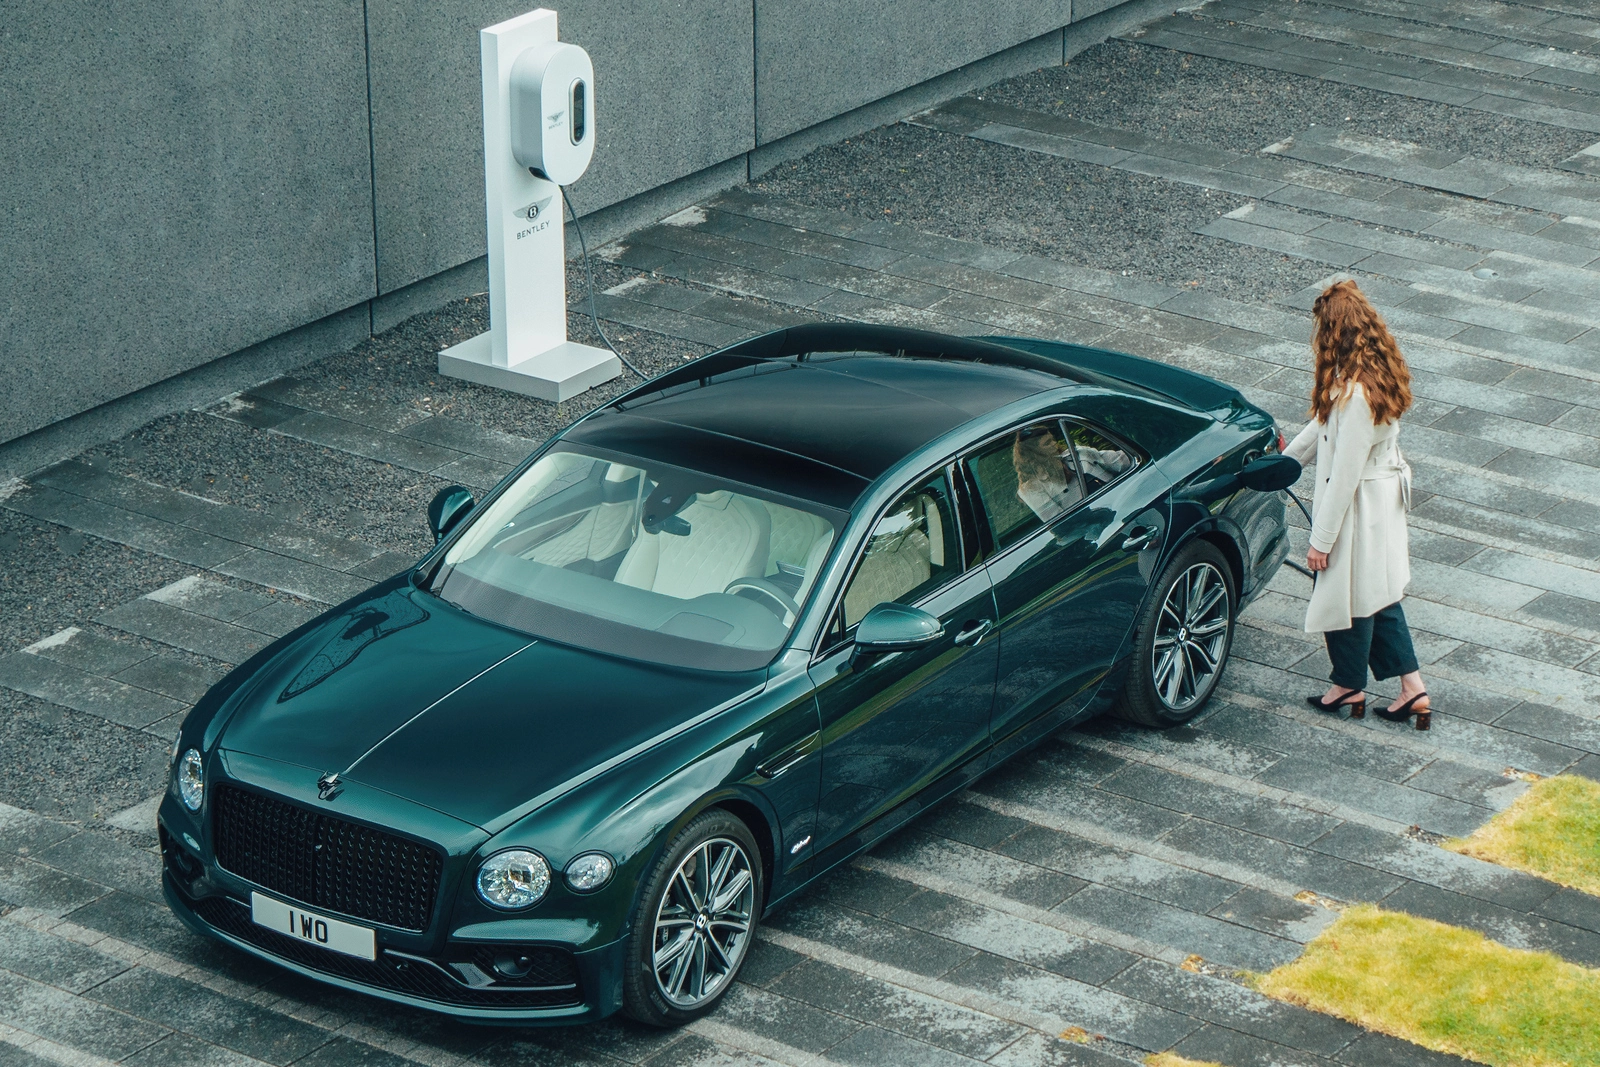 Статистика роскоши: спад продаж Bentley и новый рекорд Rolls-Royce